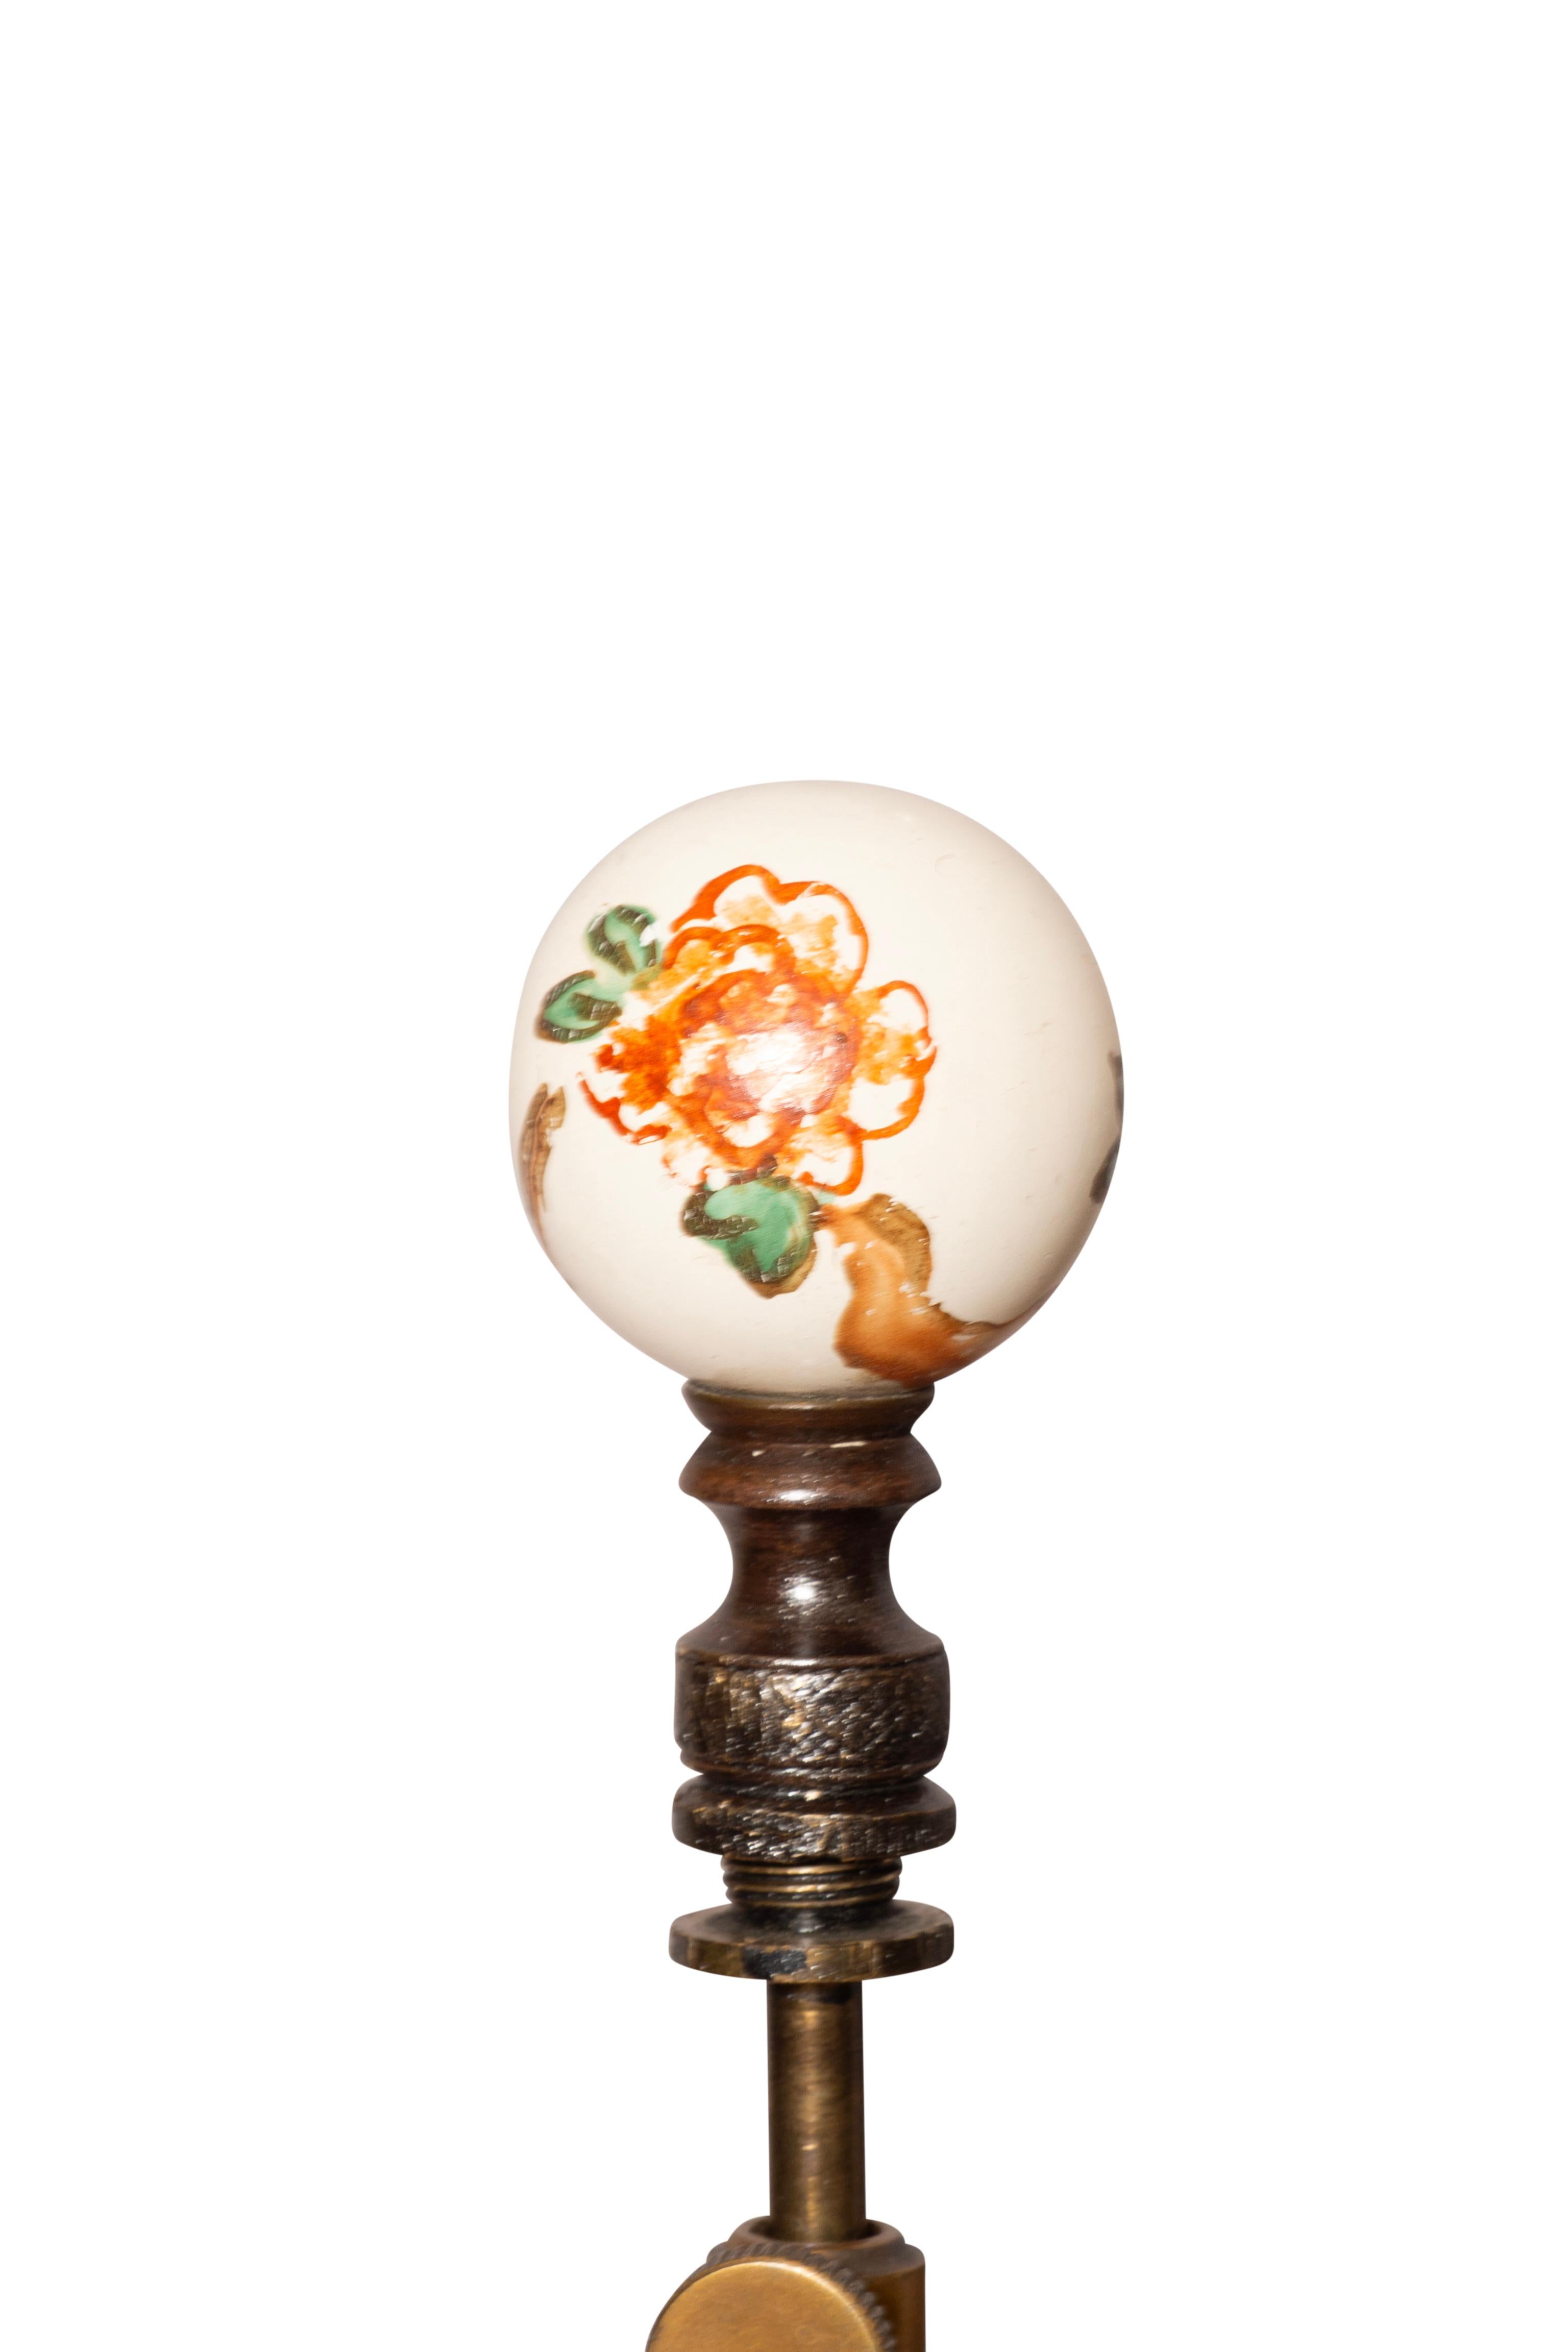 Interessante Lampen mit einem zentralen Porzellan Ingwer Glas mit Prunus Dekoration mit Deckel mit einem geschnitzten und bemalten Holzsockel zu passen und mit dem Porzellan zu mischen. Ein Verlängerungsstück zwischen dem Deckel und dem oberen Teil